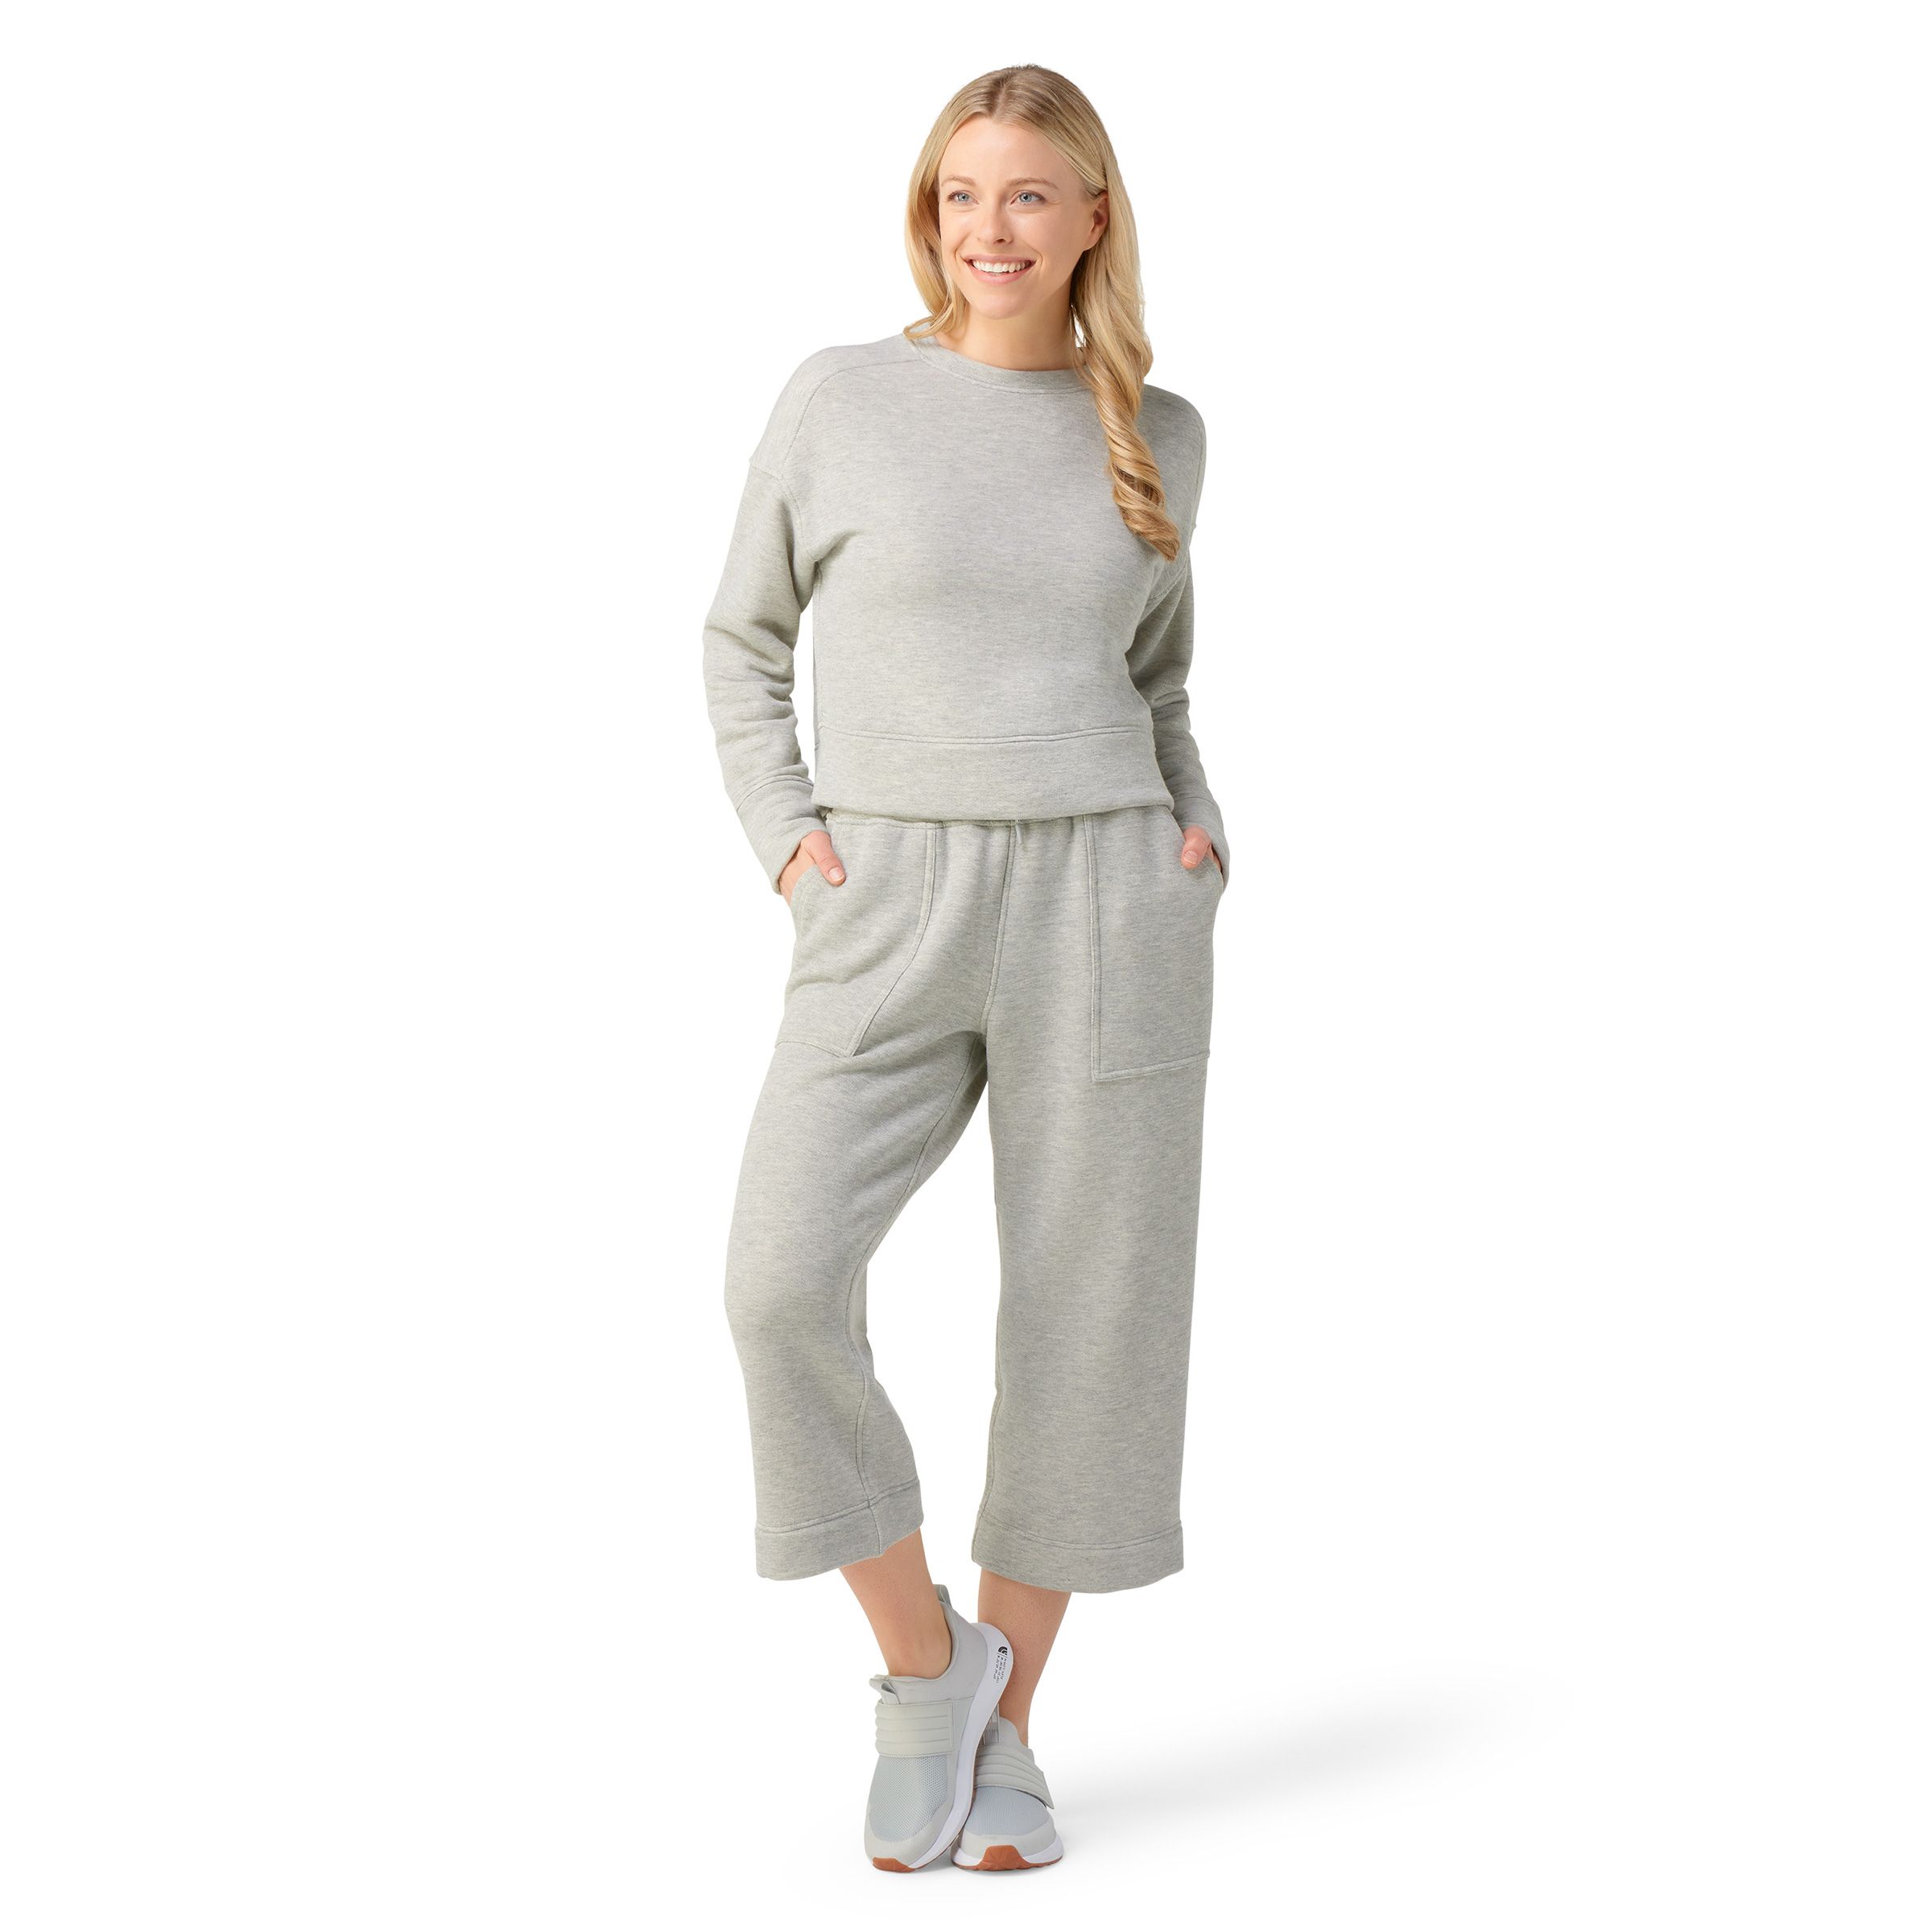 Pantalon pyjama jambe évasée -Femme